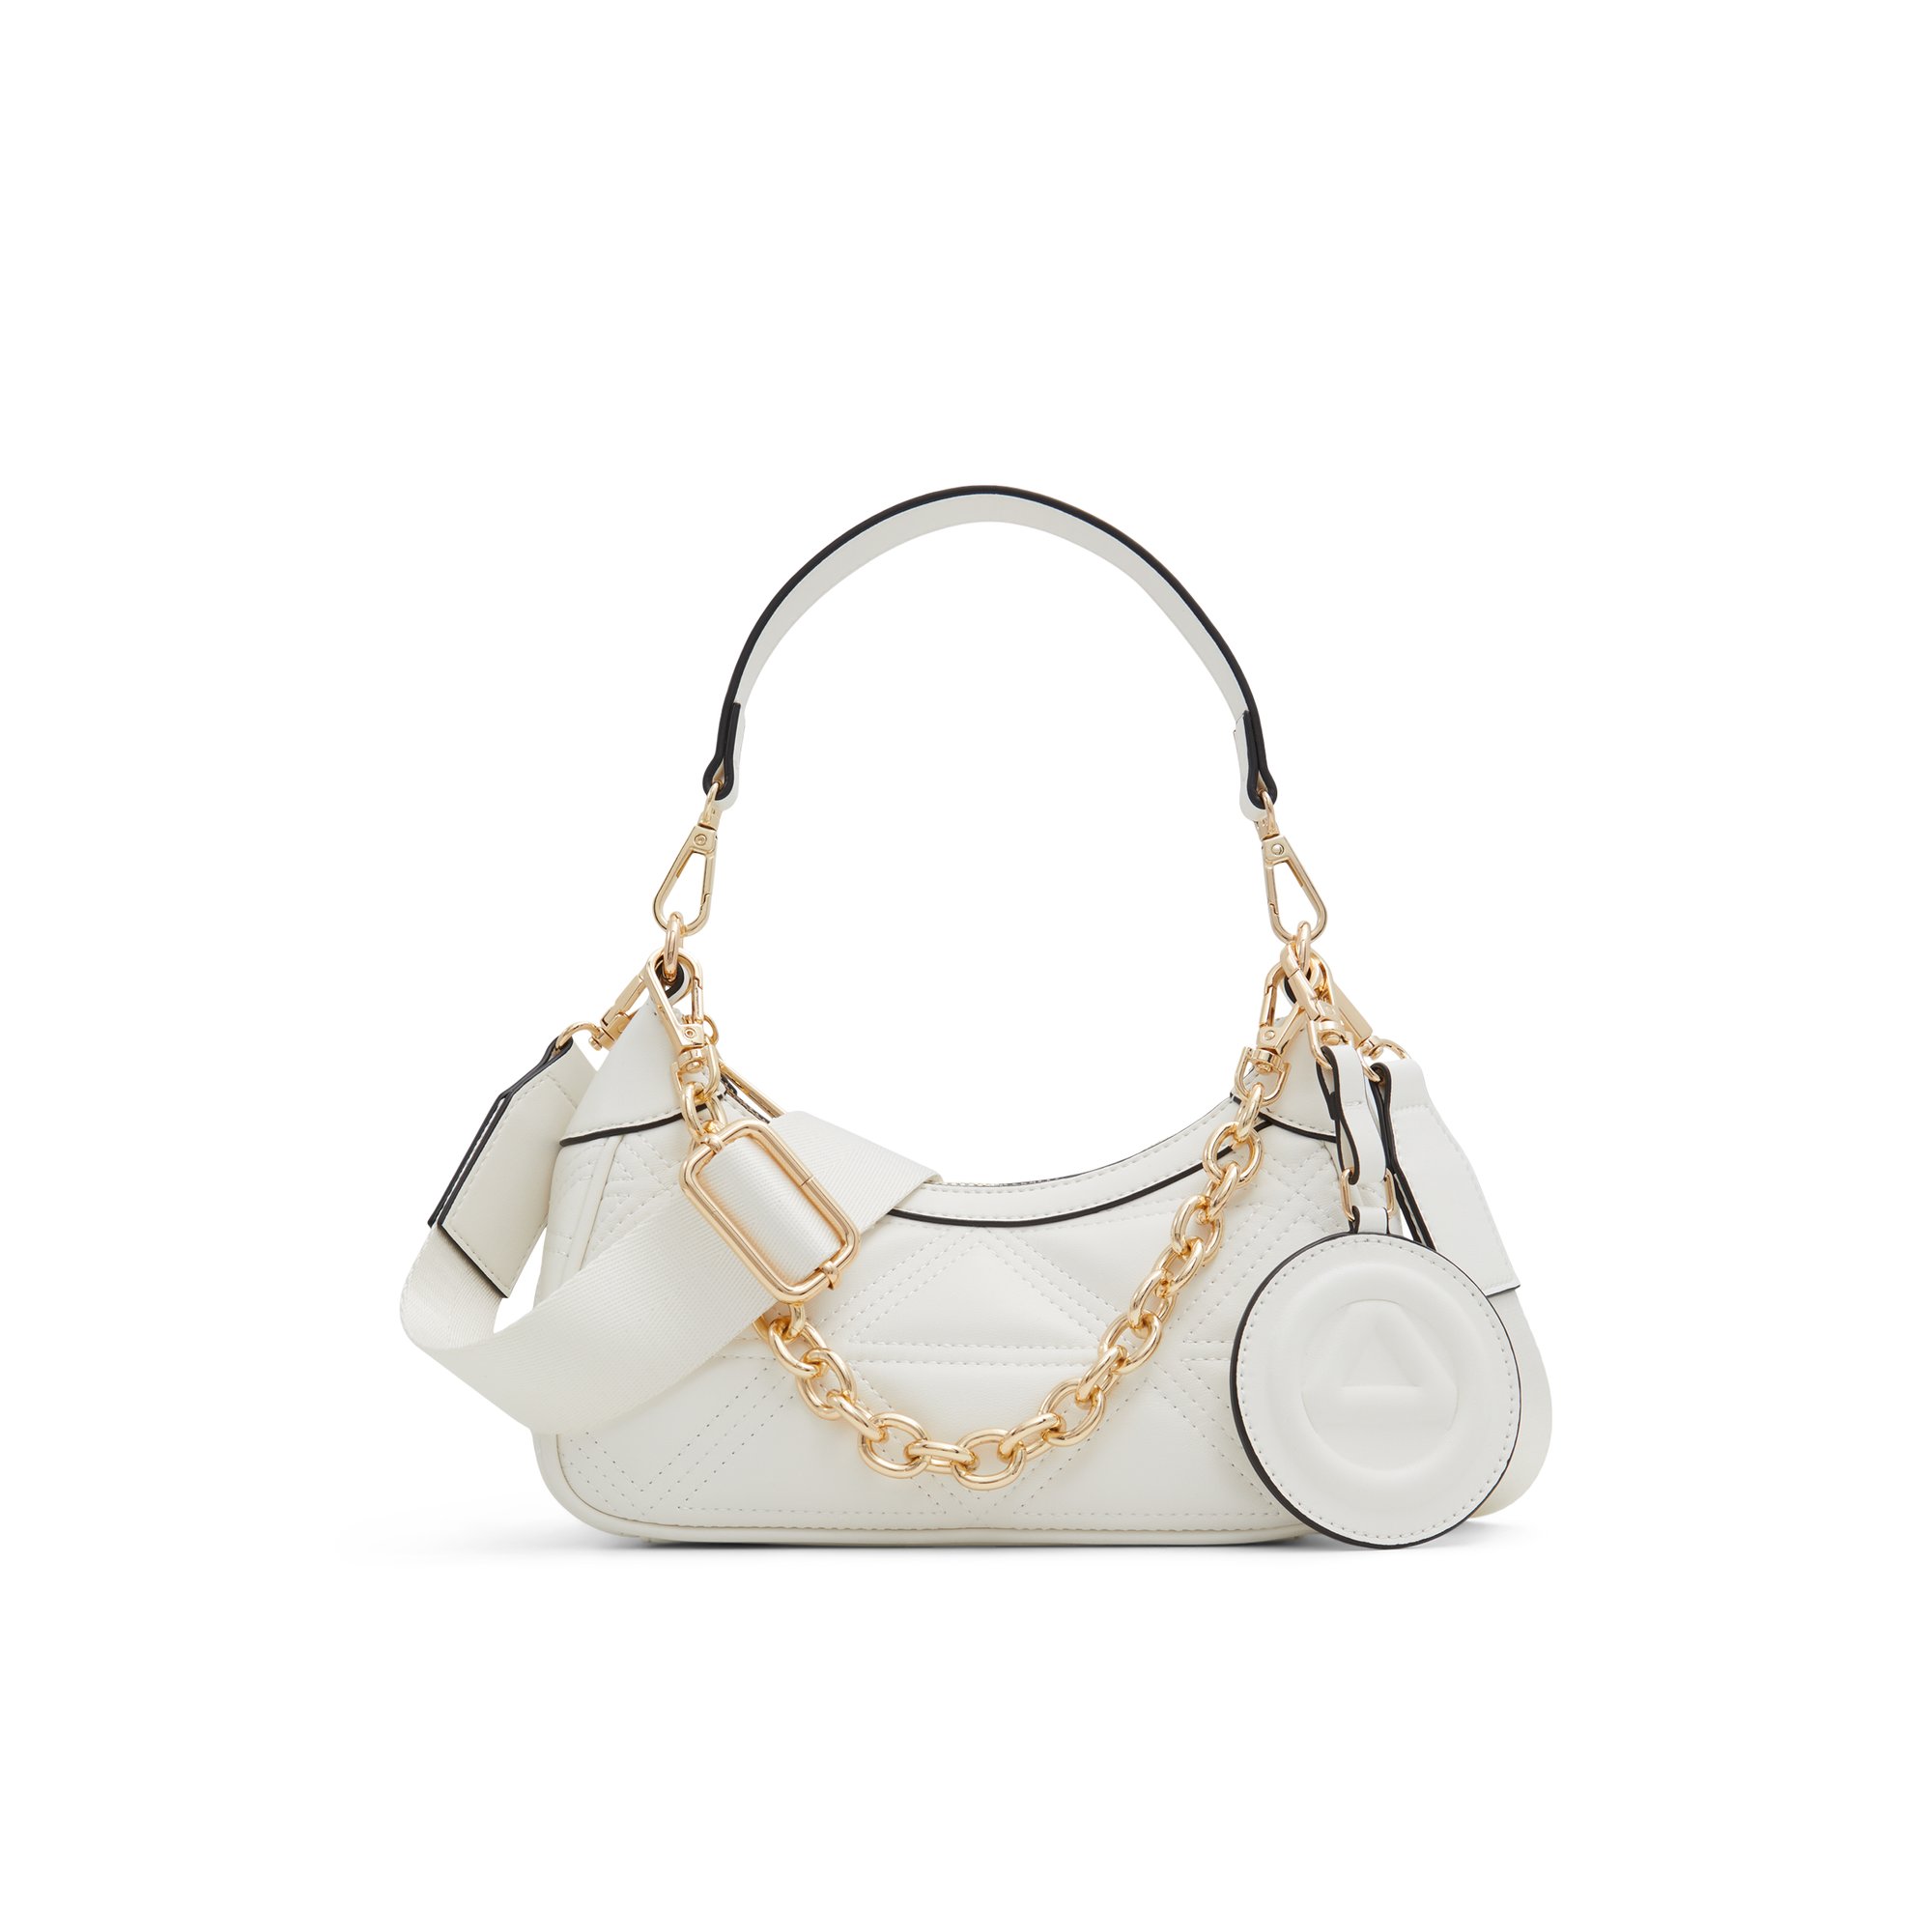 ALDO Ferventtx - Women's Shoulder Bag Handbag - White